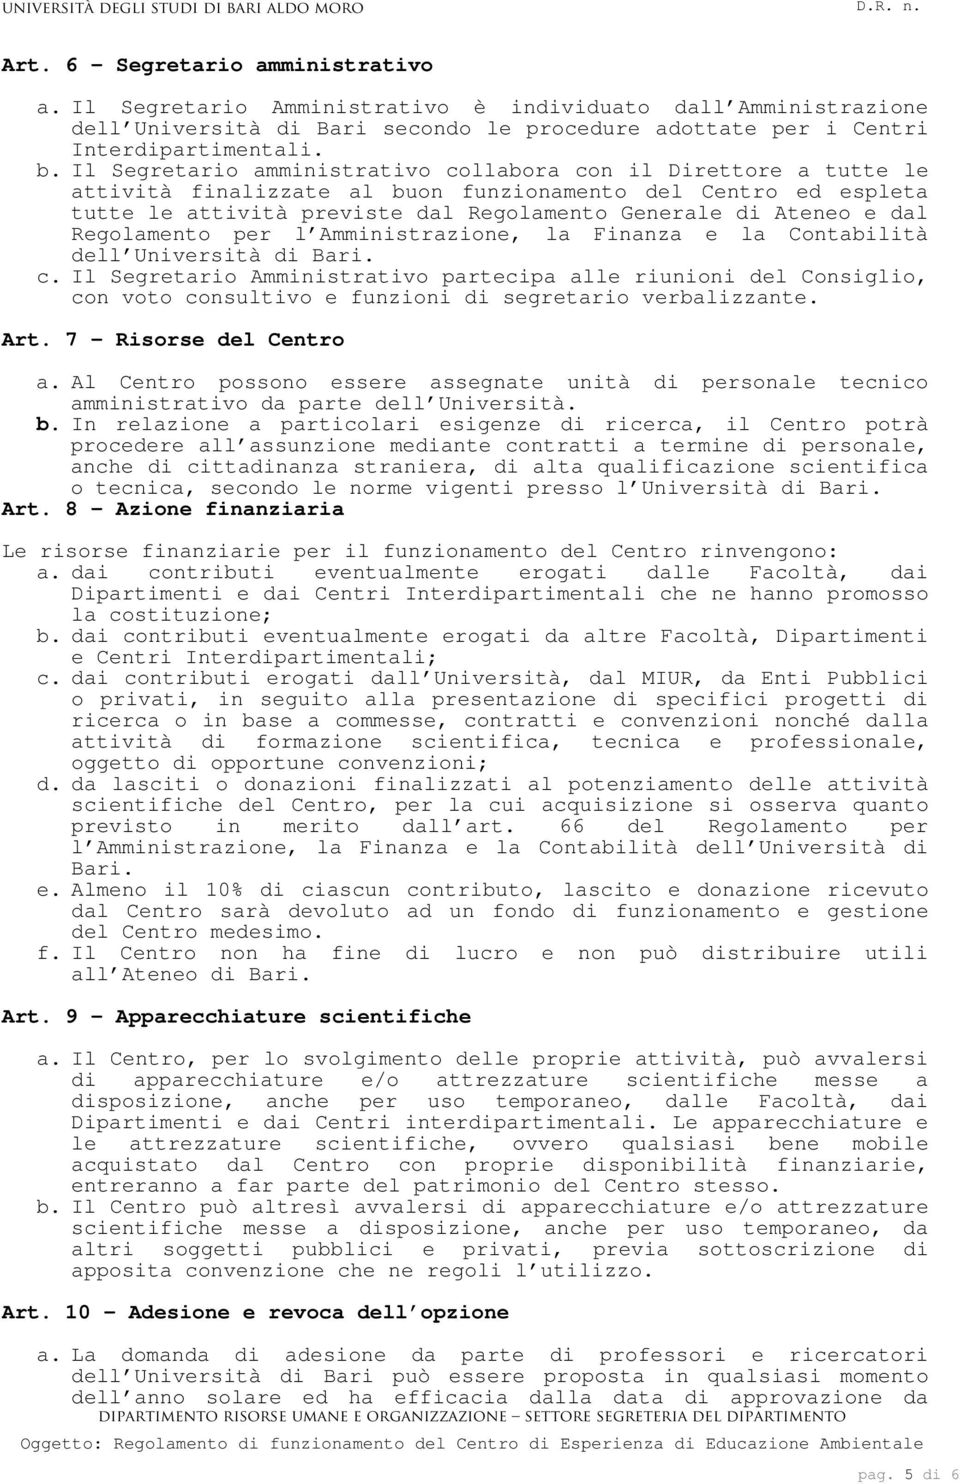 Regolamento per l Amministrazione, la Finanza e la Contabilità dell Università di Bari. c.